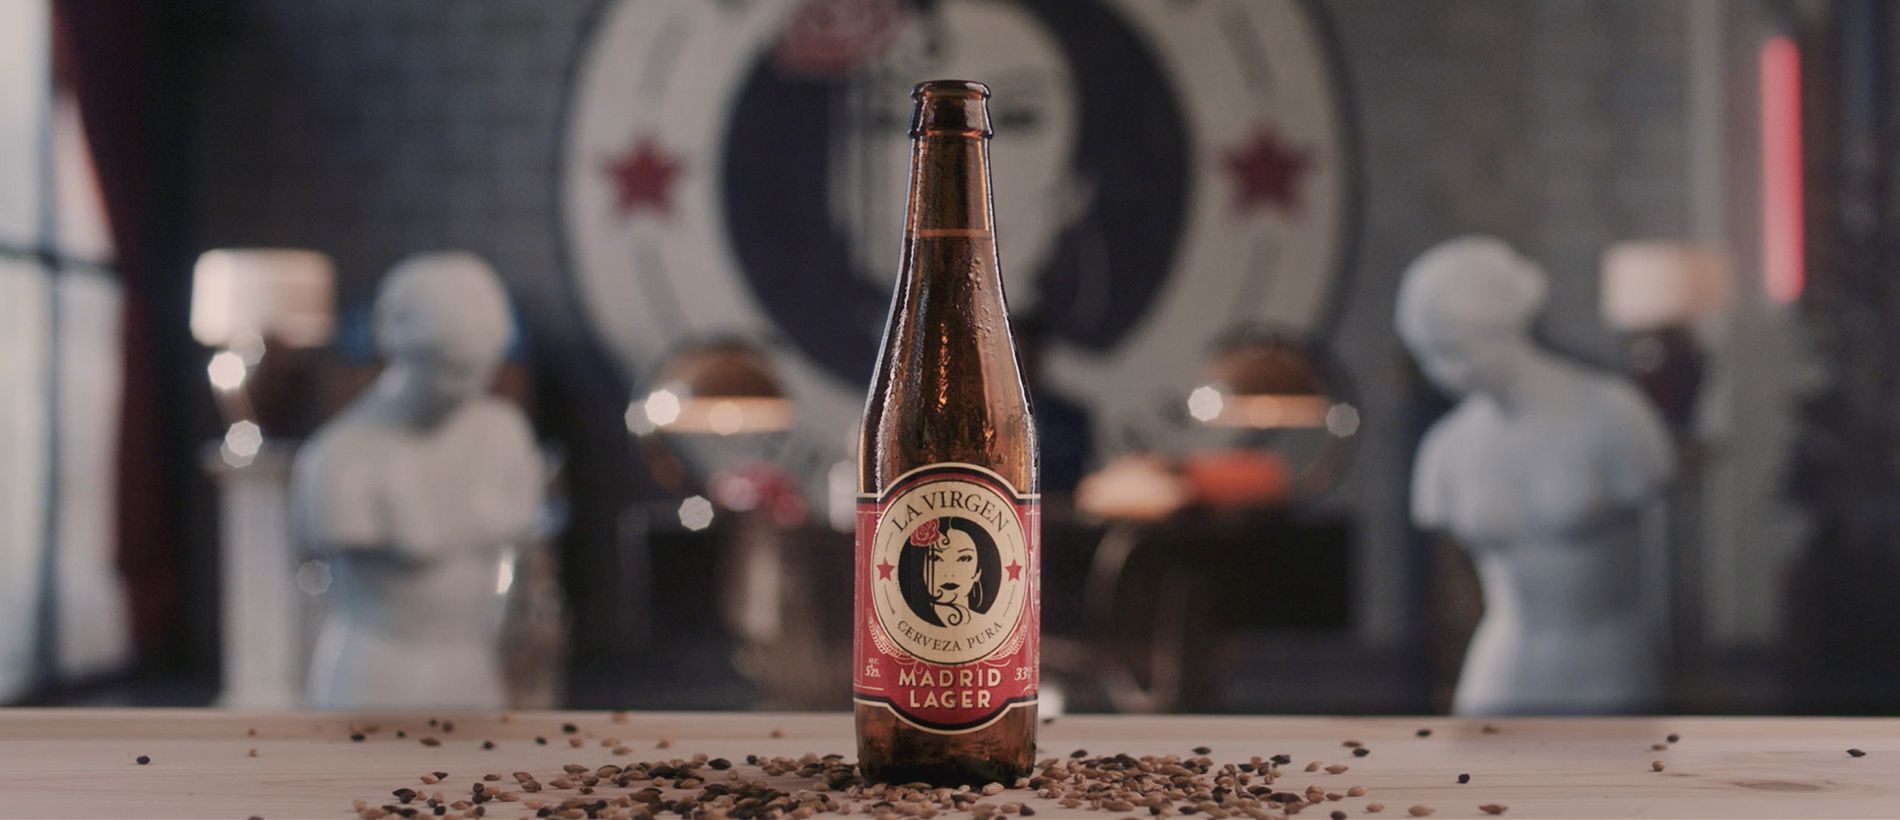 La Virgen lanza un crowdfunding para rodar el 'mejor' anuncio de cerveza